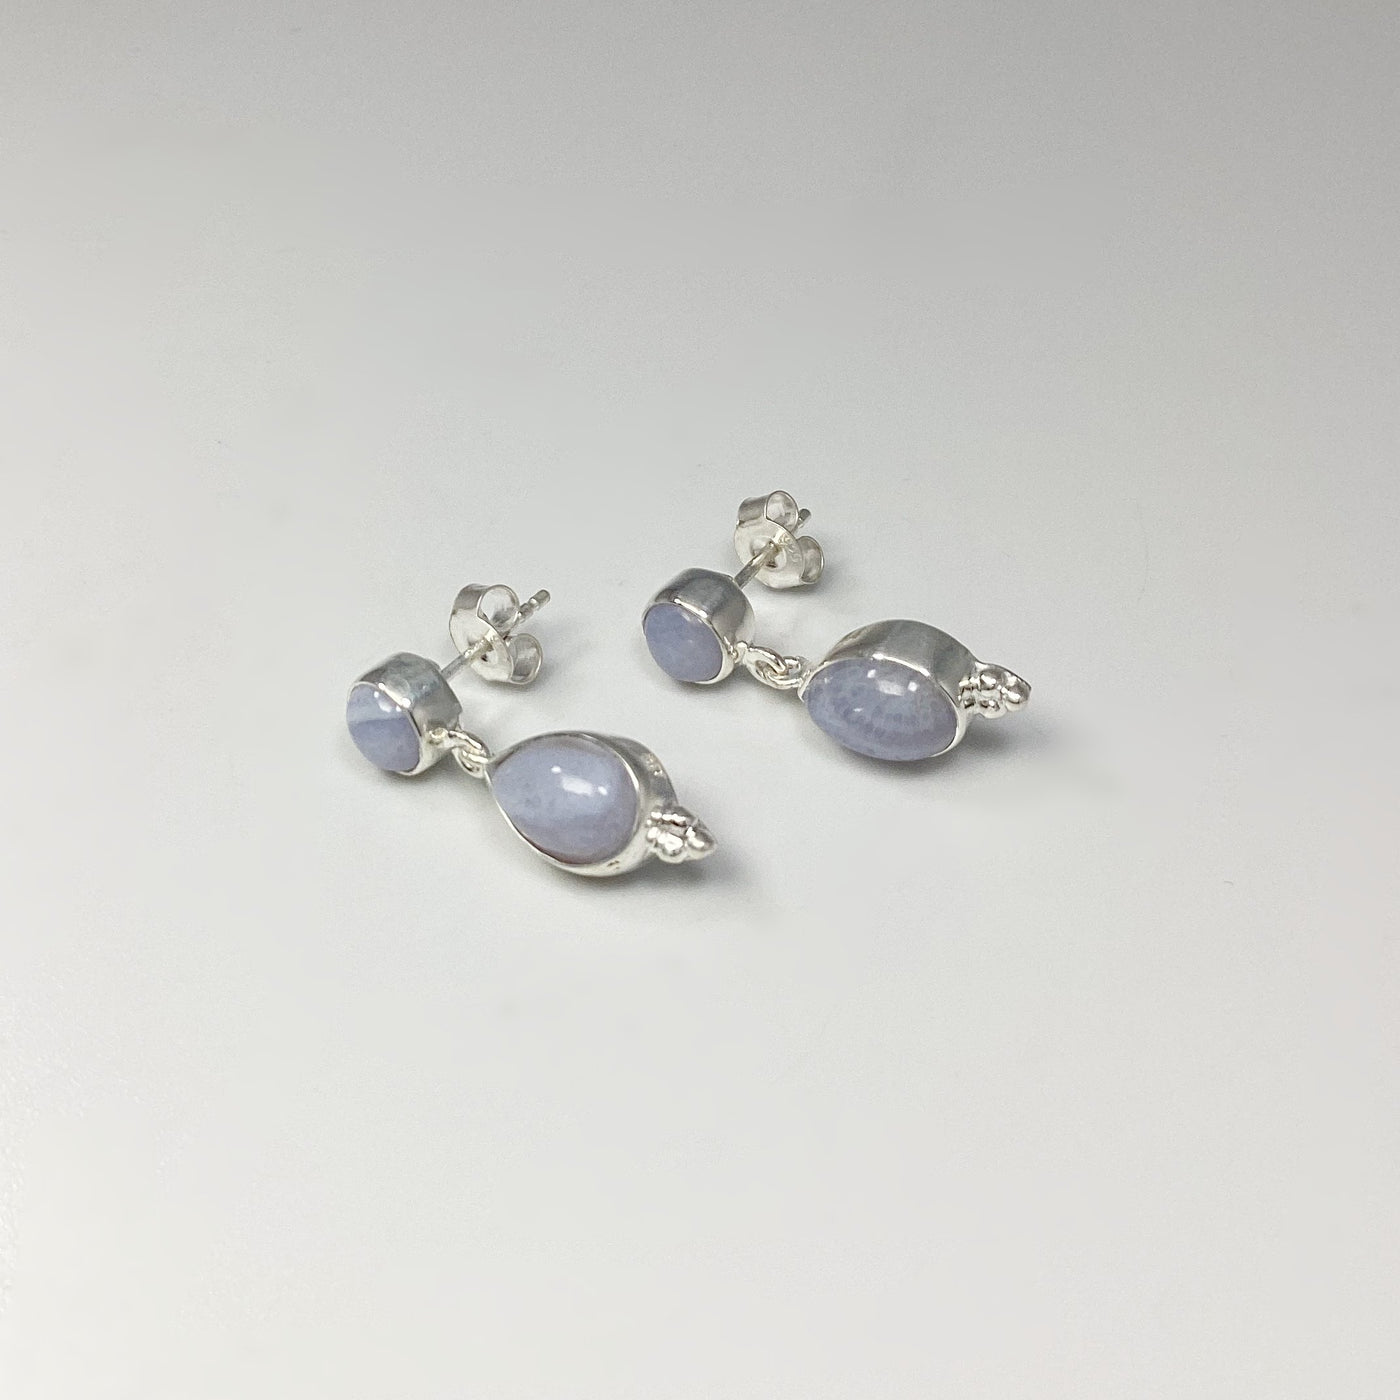 Blue Lace Agate Stud Earrings